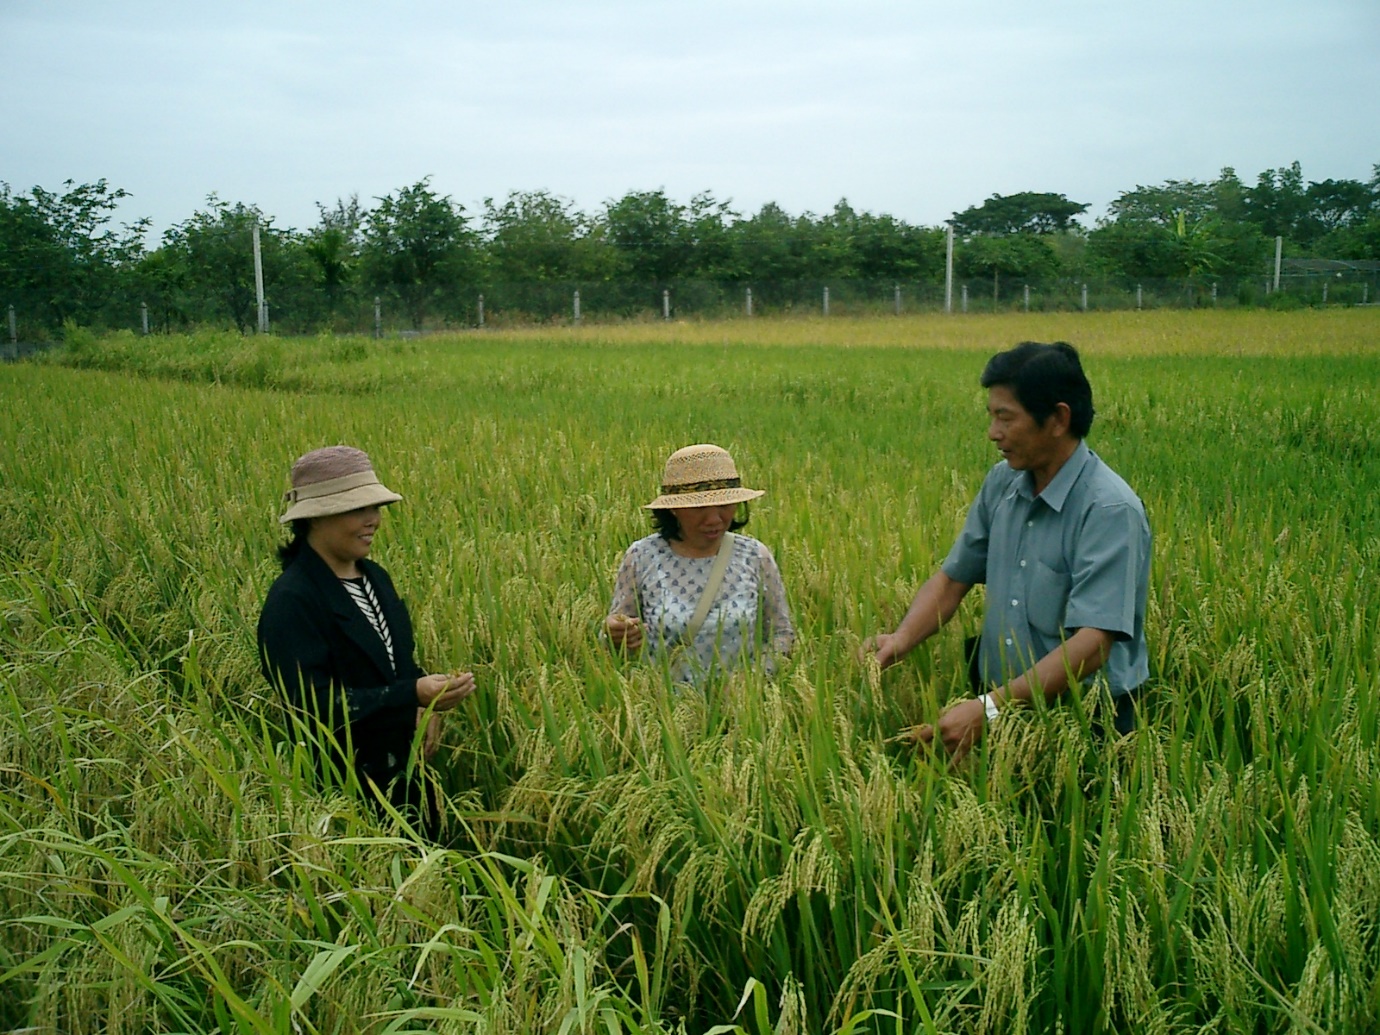 Hồ Quang Cua, Nguyễn Thu Hương và Đặng Thị Cúc đang chọn giống lúa ST trên trại giống lúa HQCua ngày 23/1/2003. Ảnh: Võ Tòng Xuân.